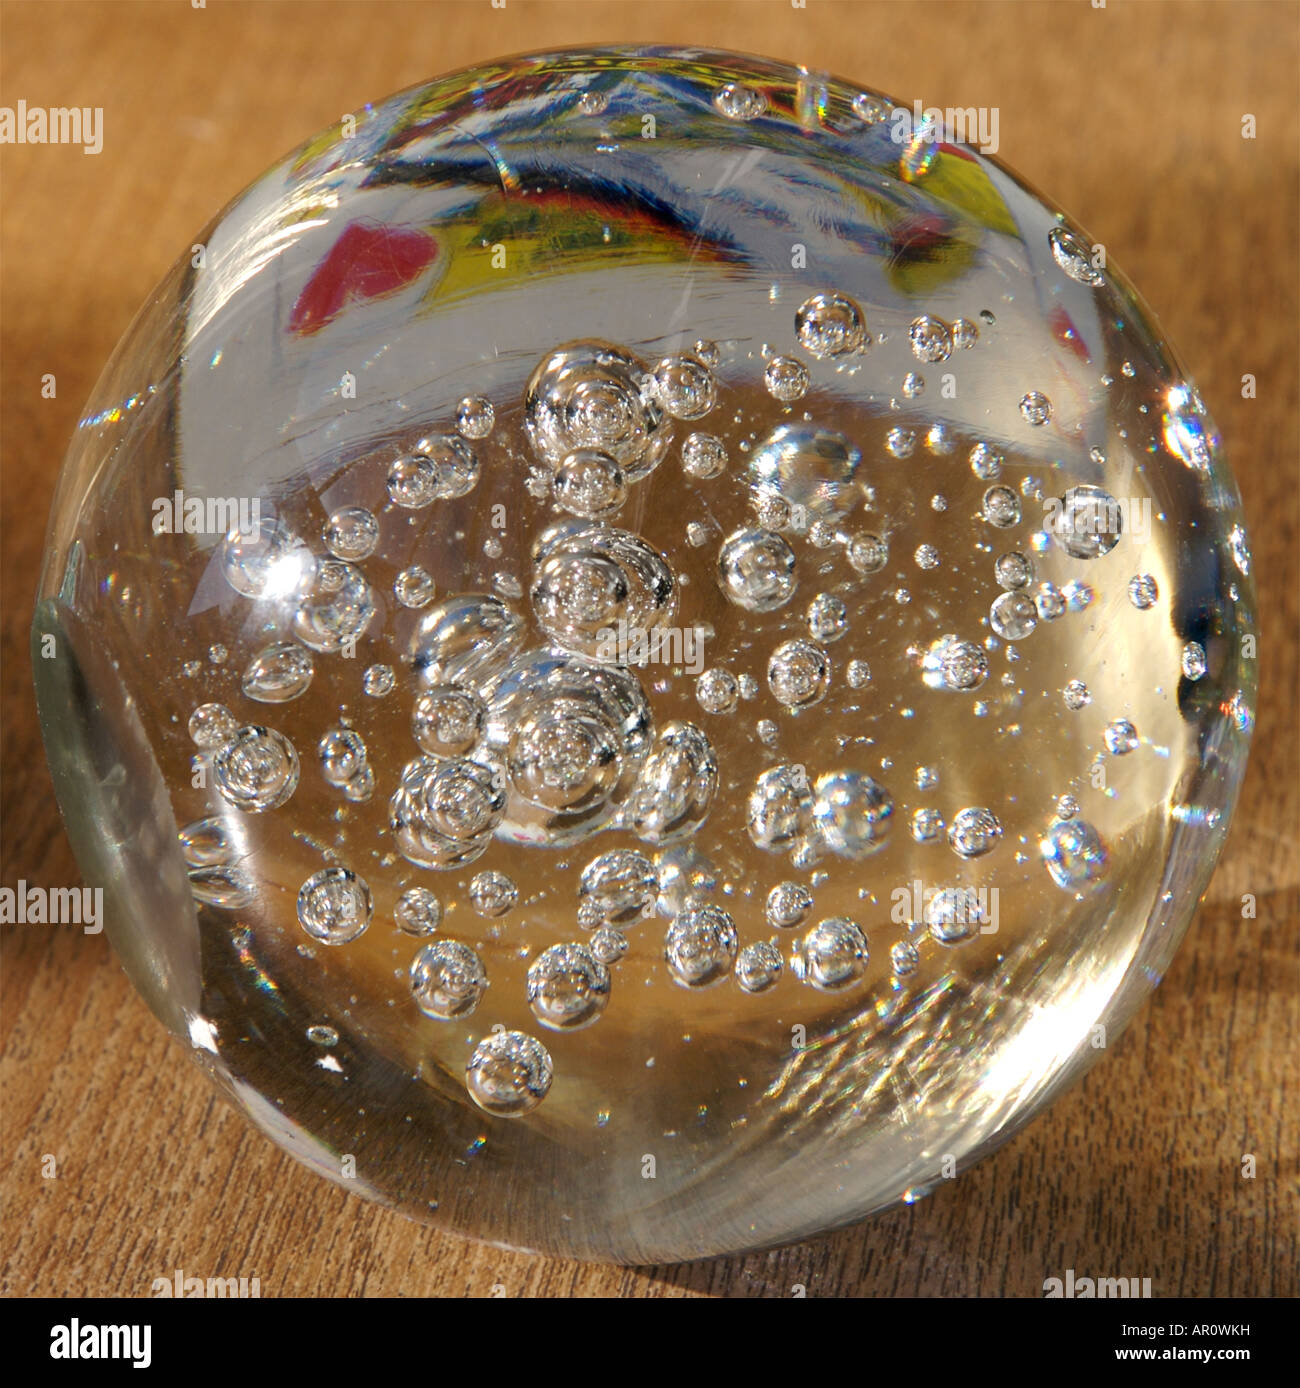 Königin der Herzen reflektiert in einer Glaskugel mit Luftblasen im  Sonnenlicht Stockfotografie - Alamy